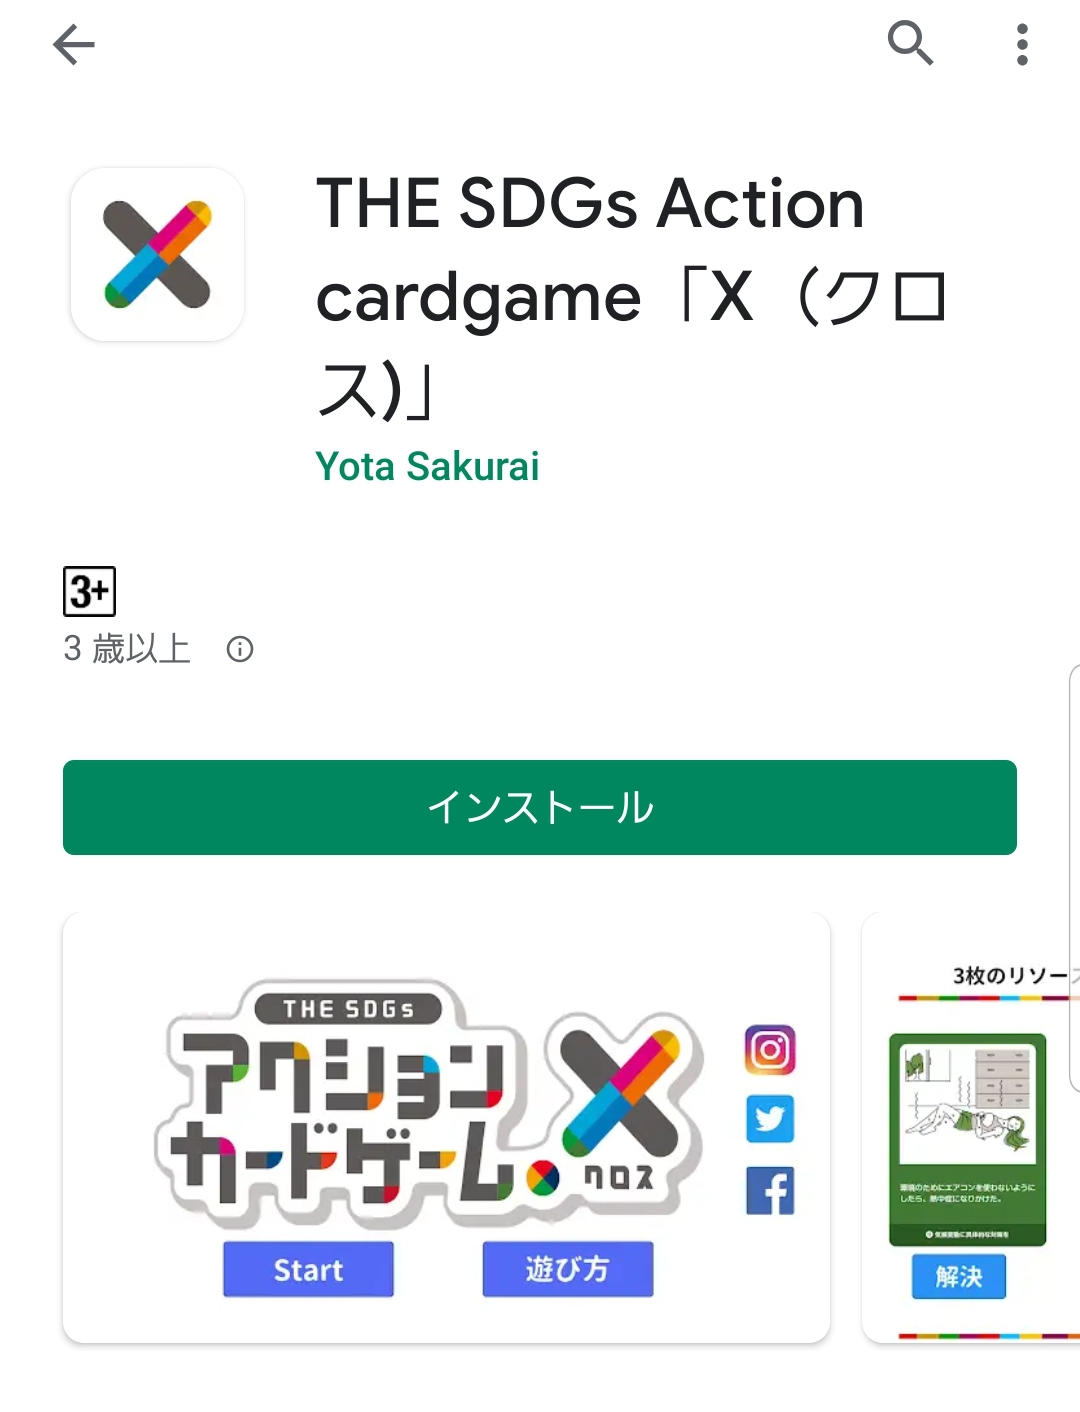 「THE SDGs アクションカードゲーム X（クロス）」Androidアプリを令和2年1月20日よりGoogle Playでリリース